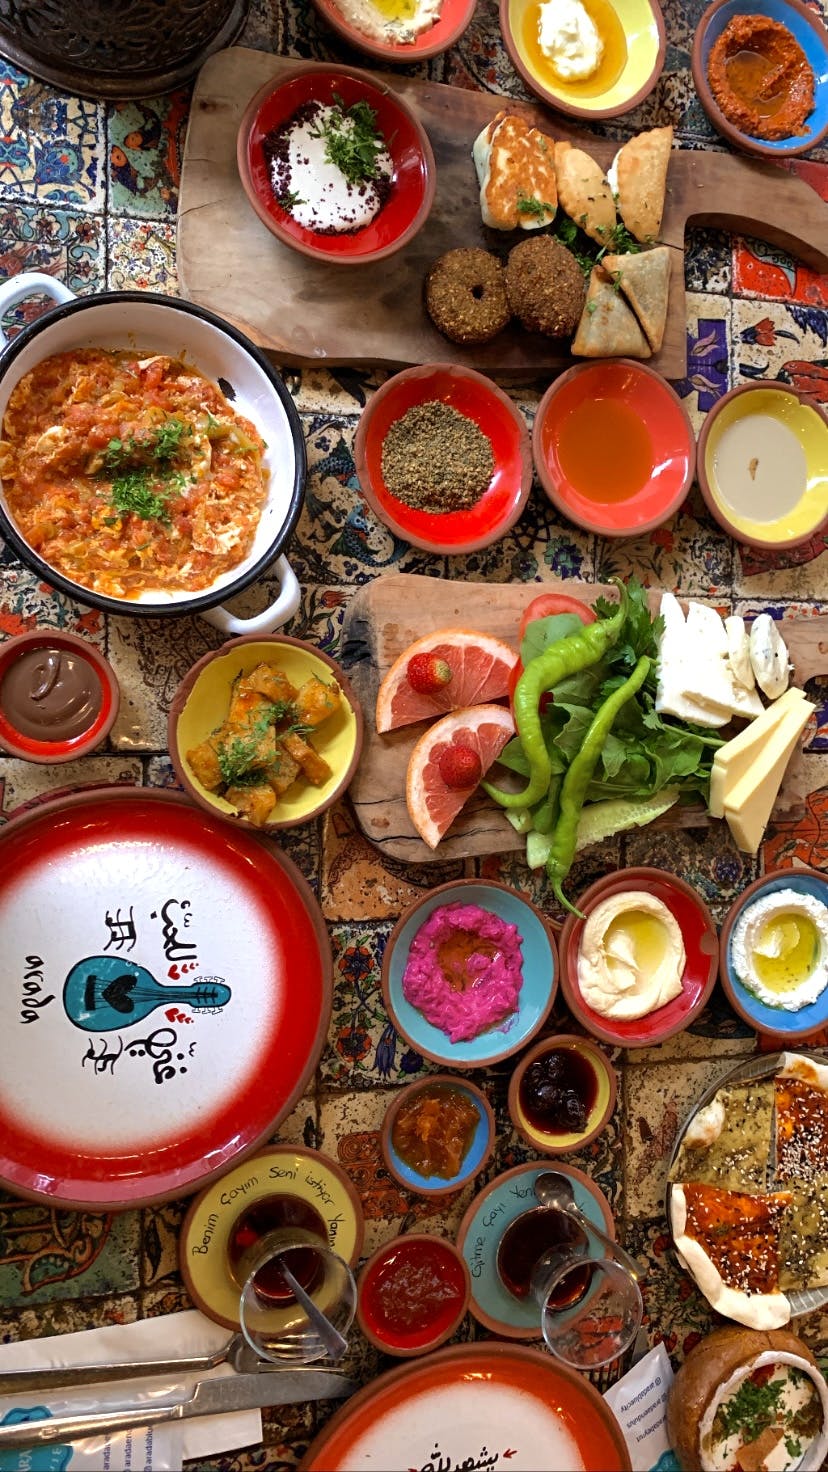 Ein Tisch, voll gedeckt mit vielen unterschiedlichen Aufstrichen, türkischem Tee, Brot und süßem Gebäck.  